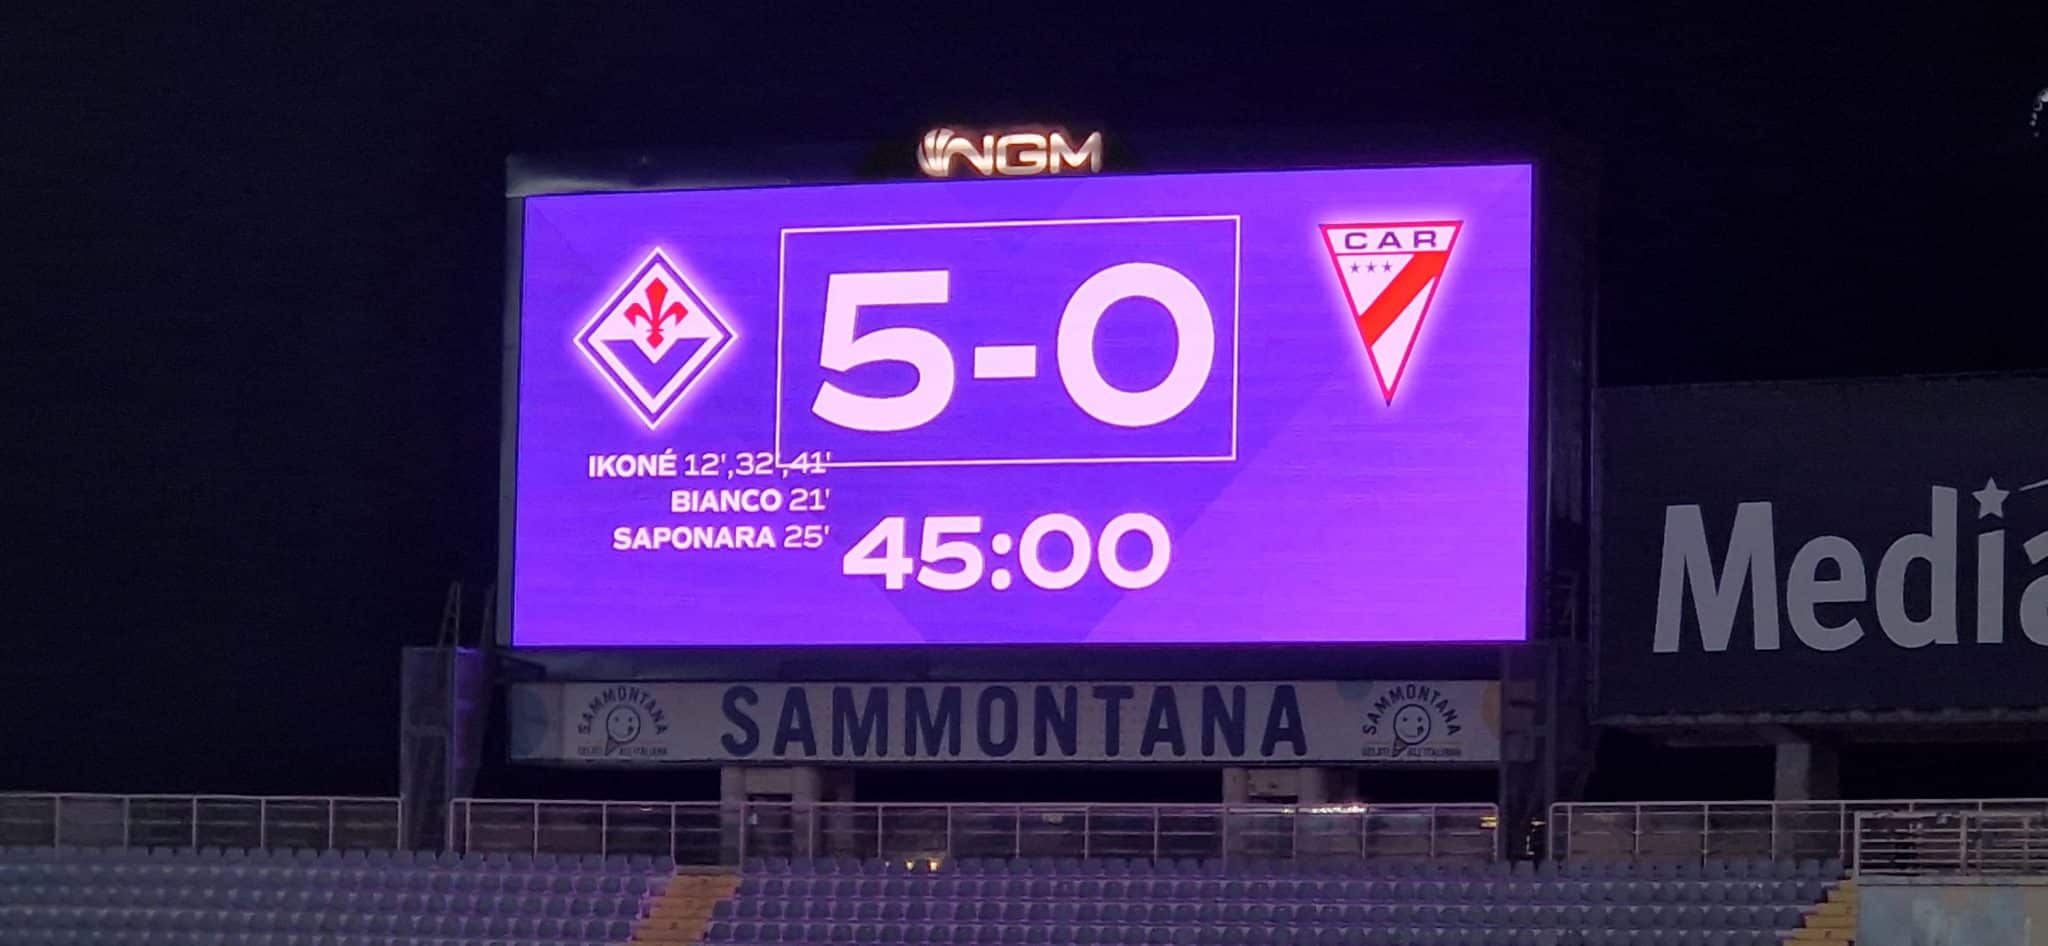 Coup du chapeau du spectacle Ikonè.  La Fiorentina mène 5-0 en fin de première mi-temps.  Deux passes décisives de Dodò